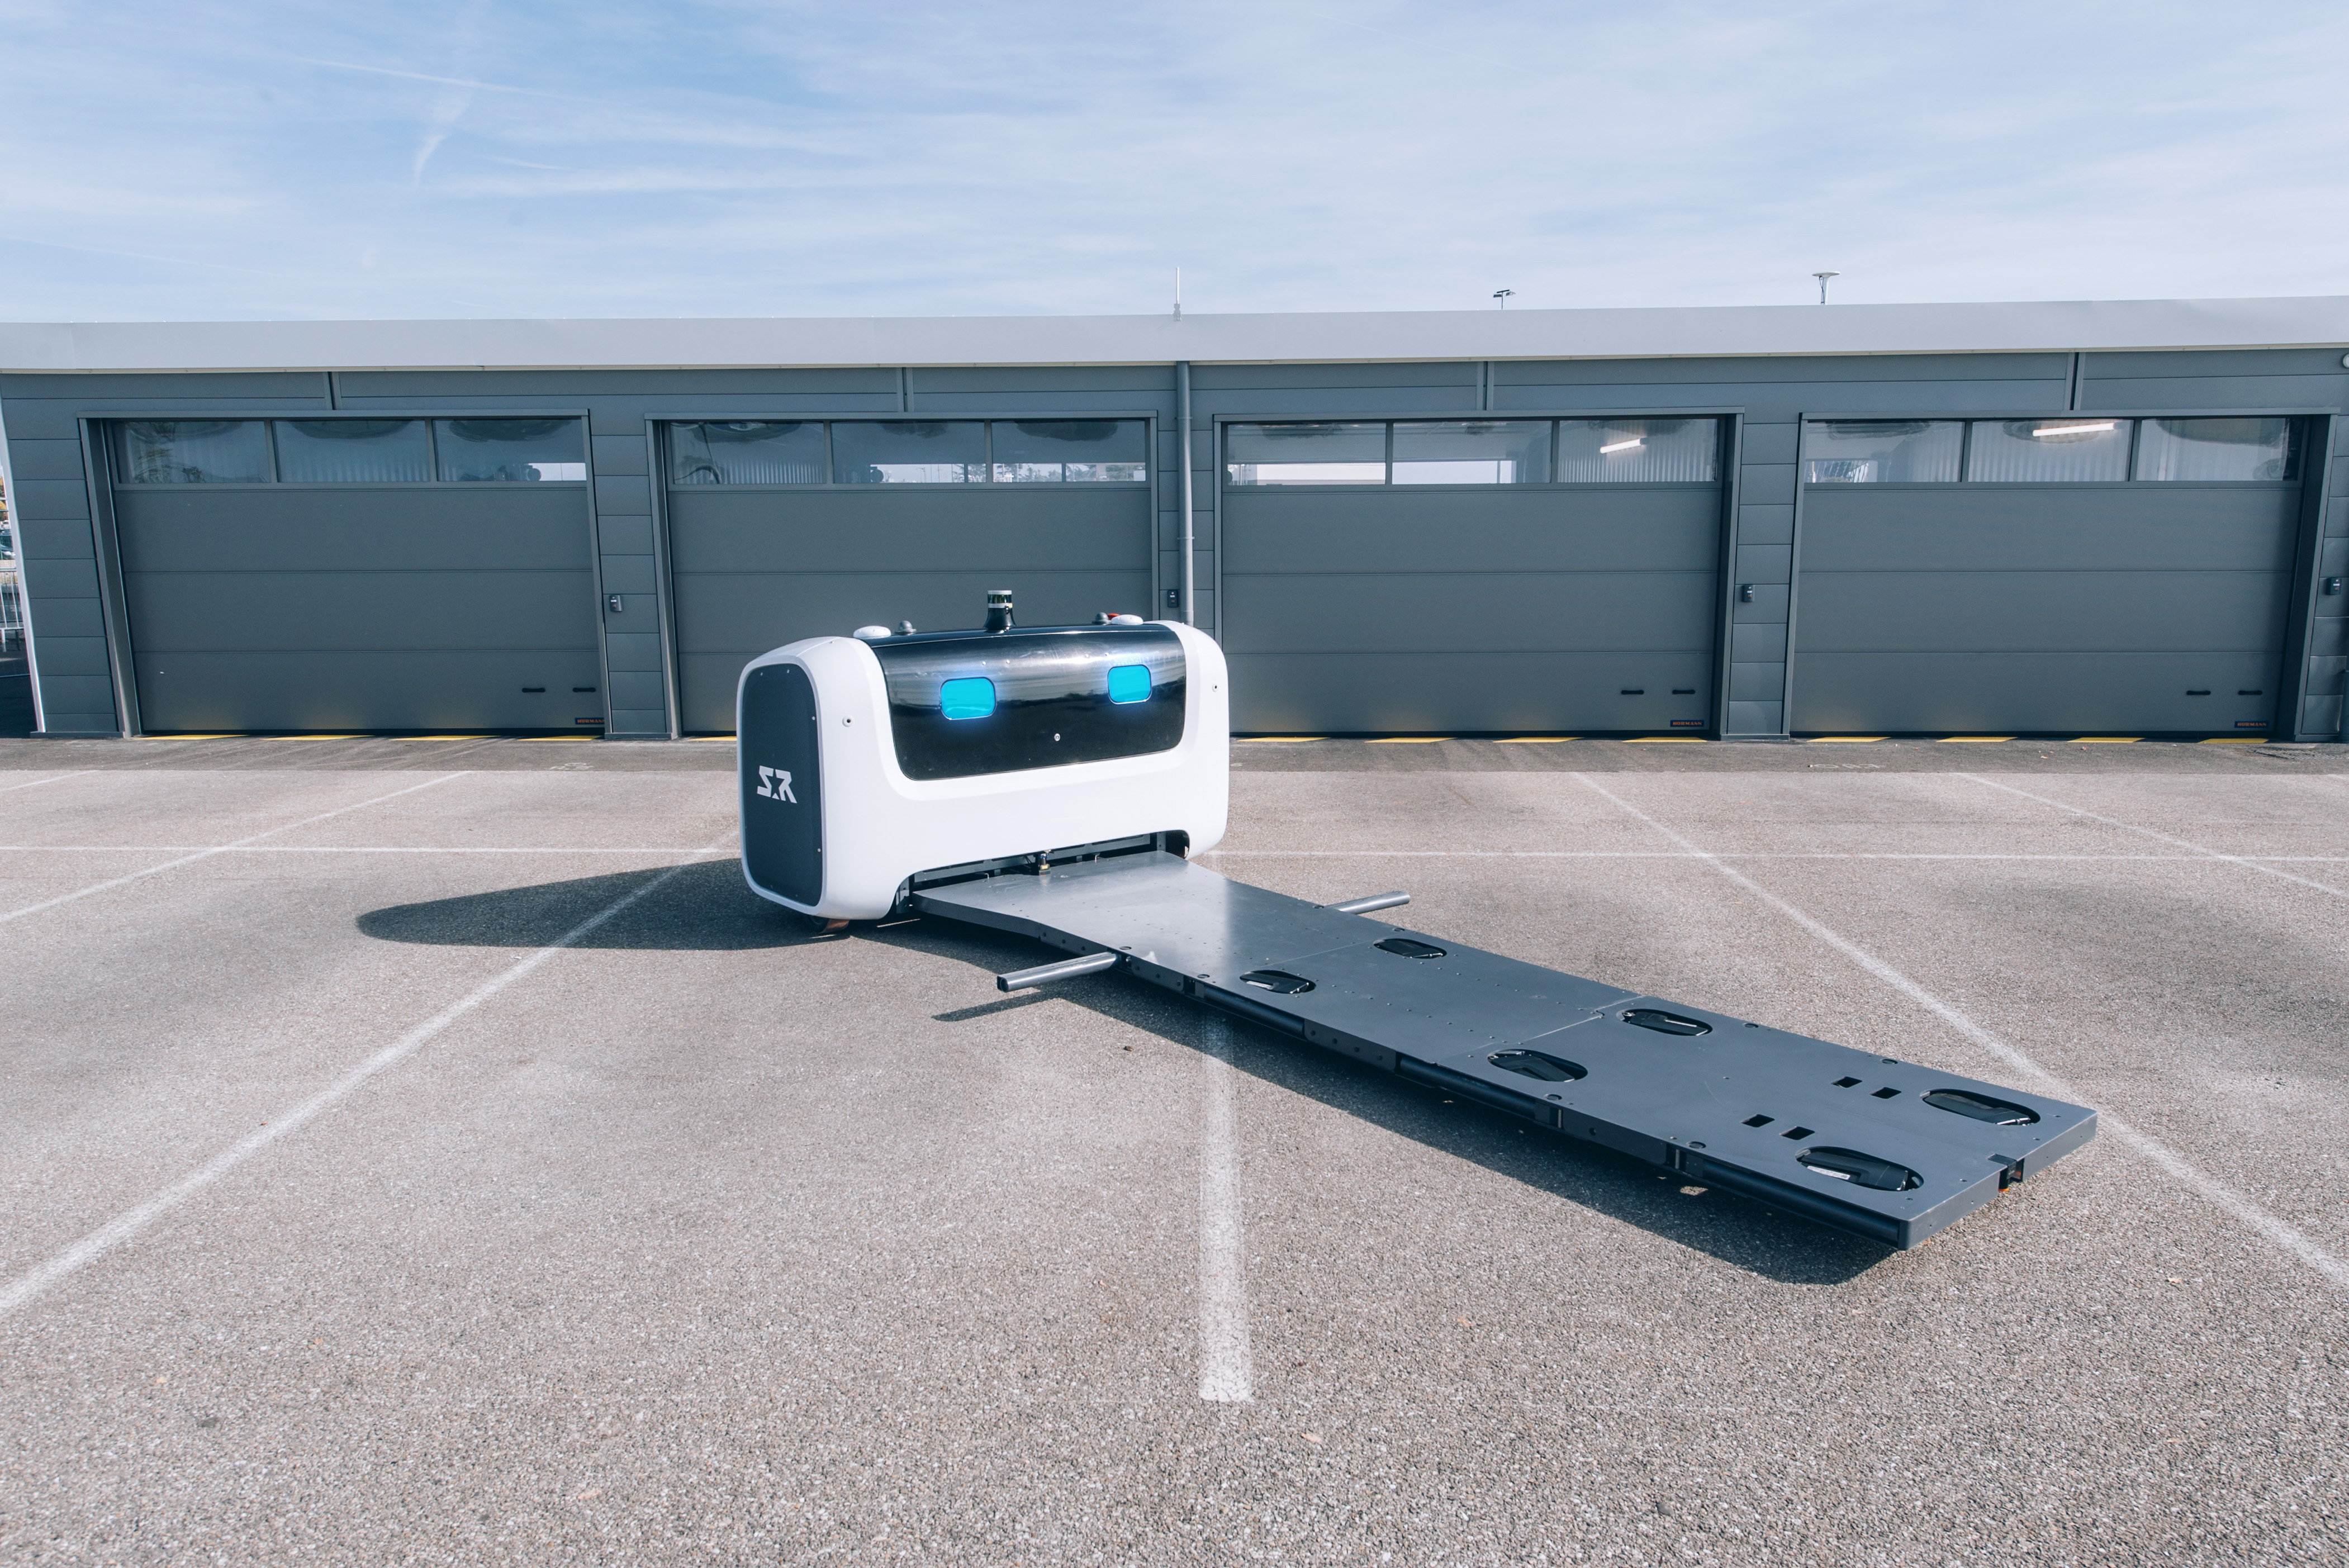 Во Франции изобрели роботов, умеющих парковать авто практически в невозможных условиях